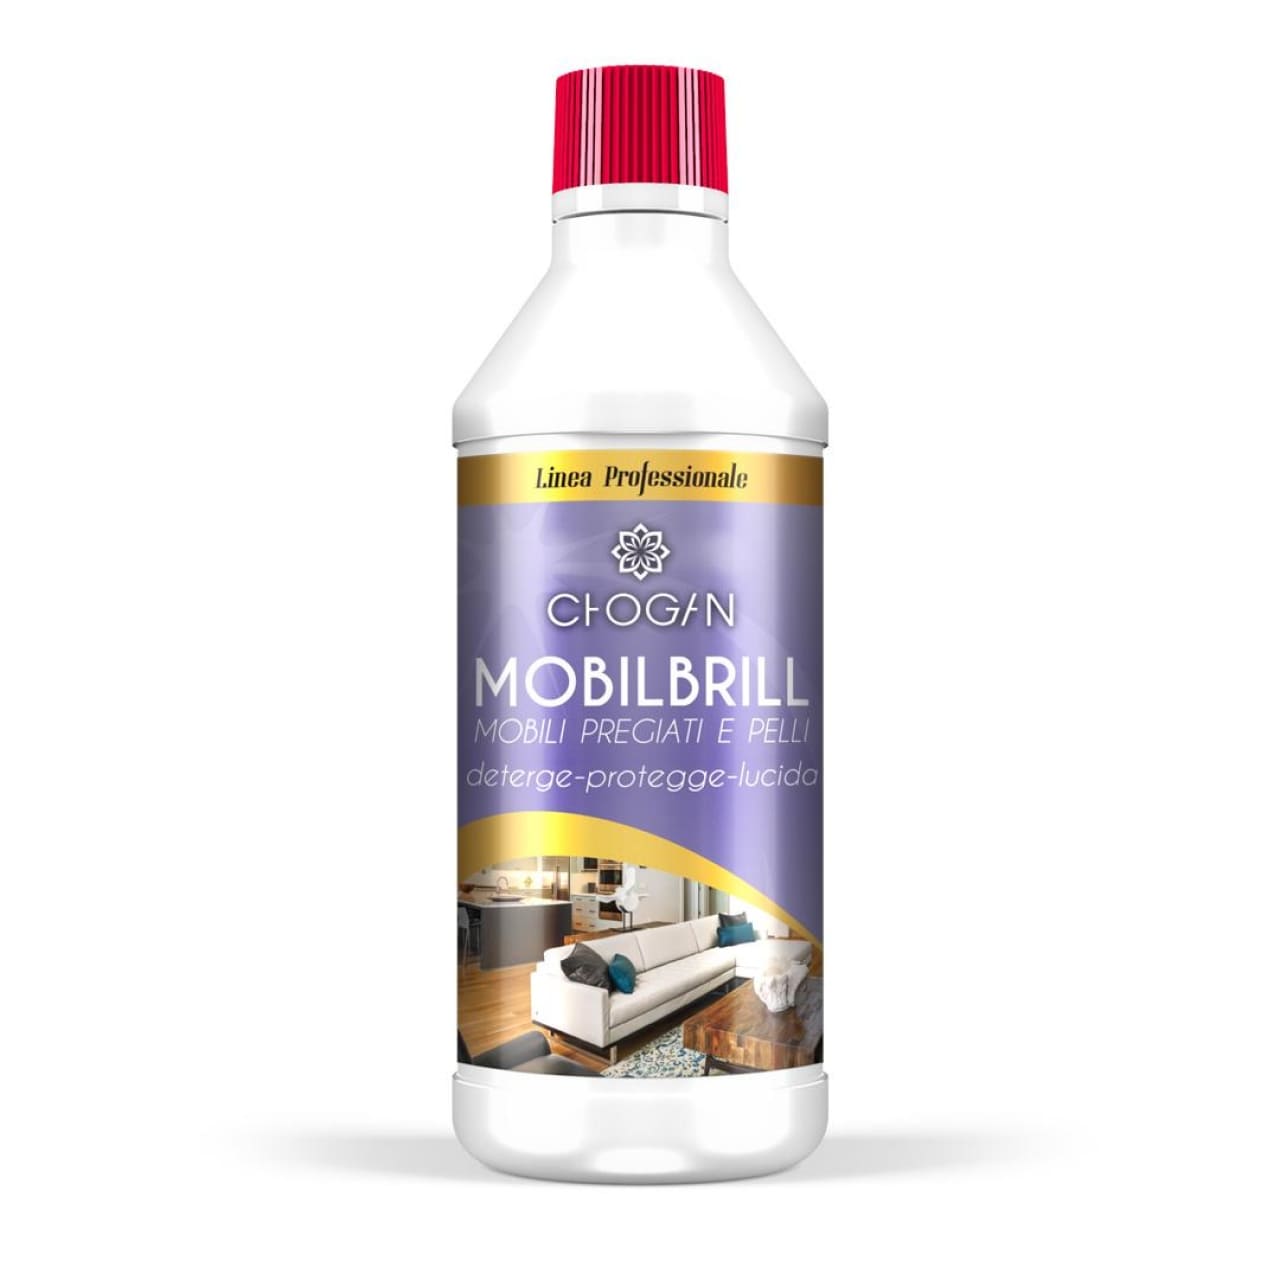 MOBILBRILL schonender Multiflächen-Reiniger mit Polierwirkung